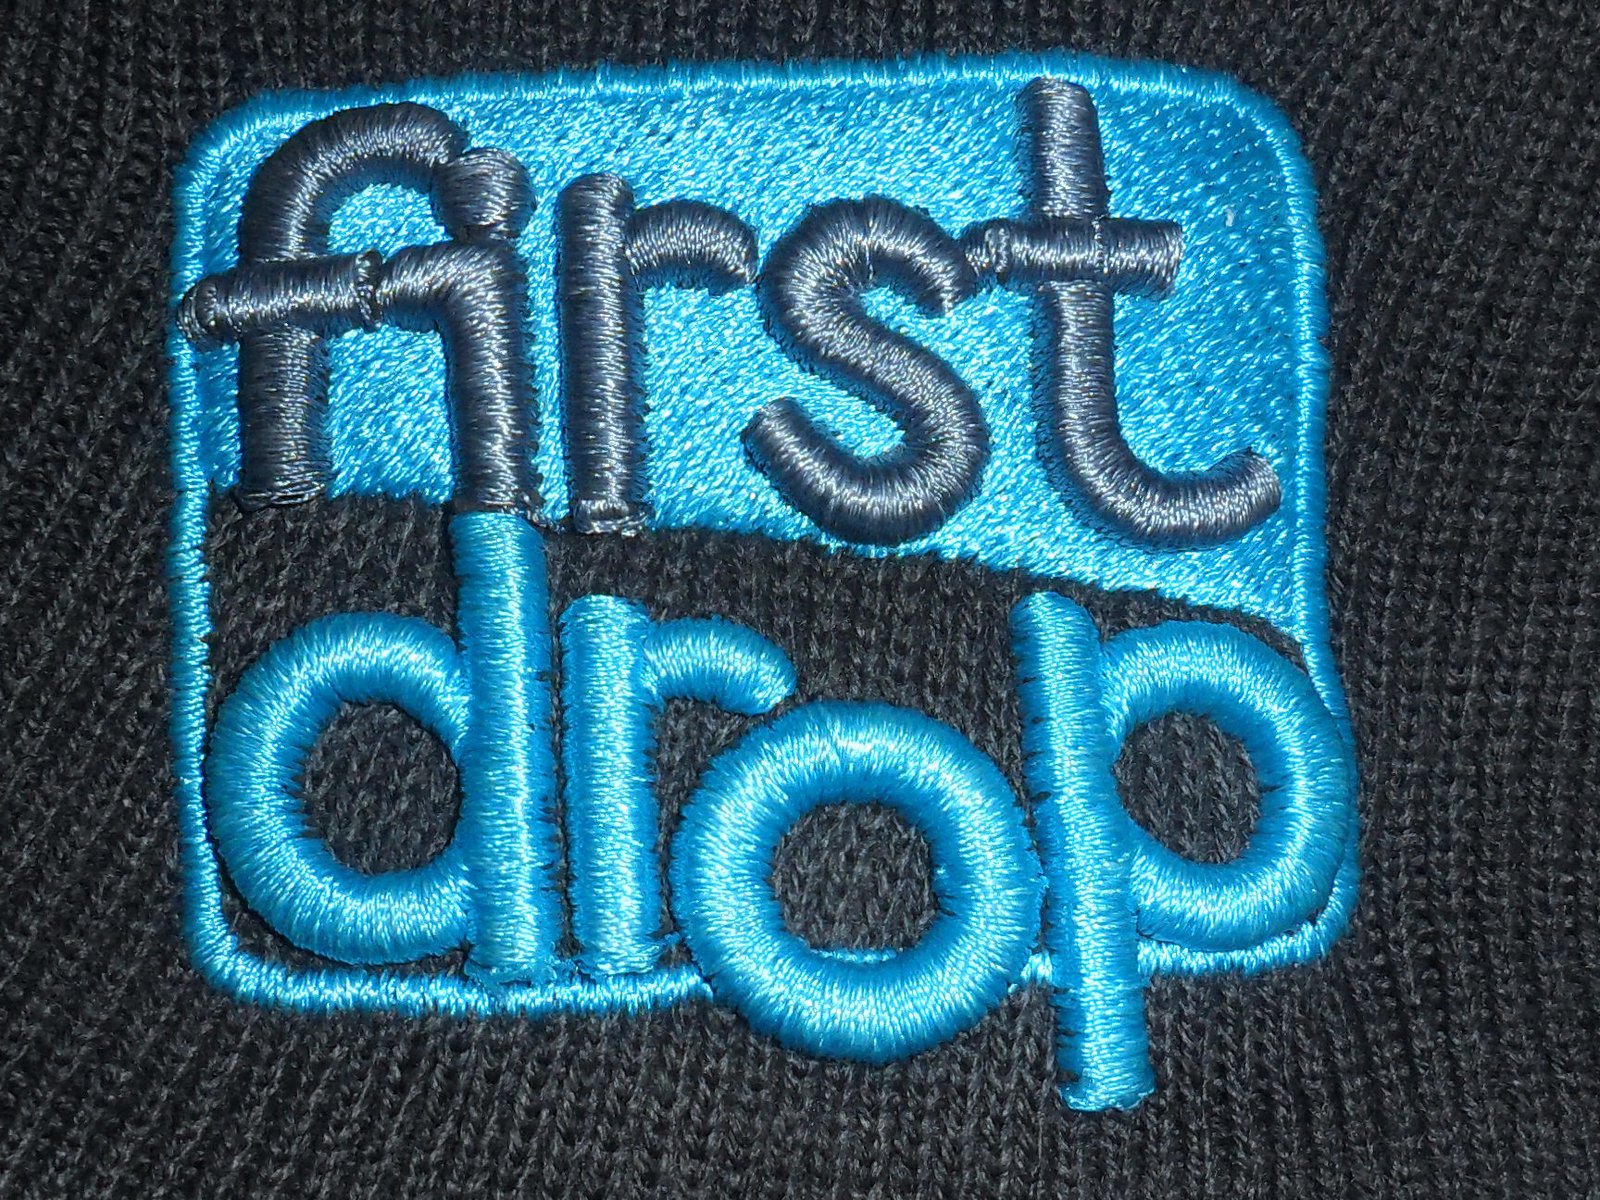 First drop